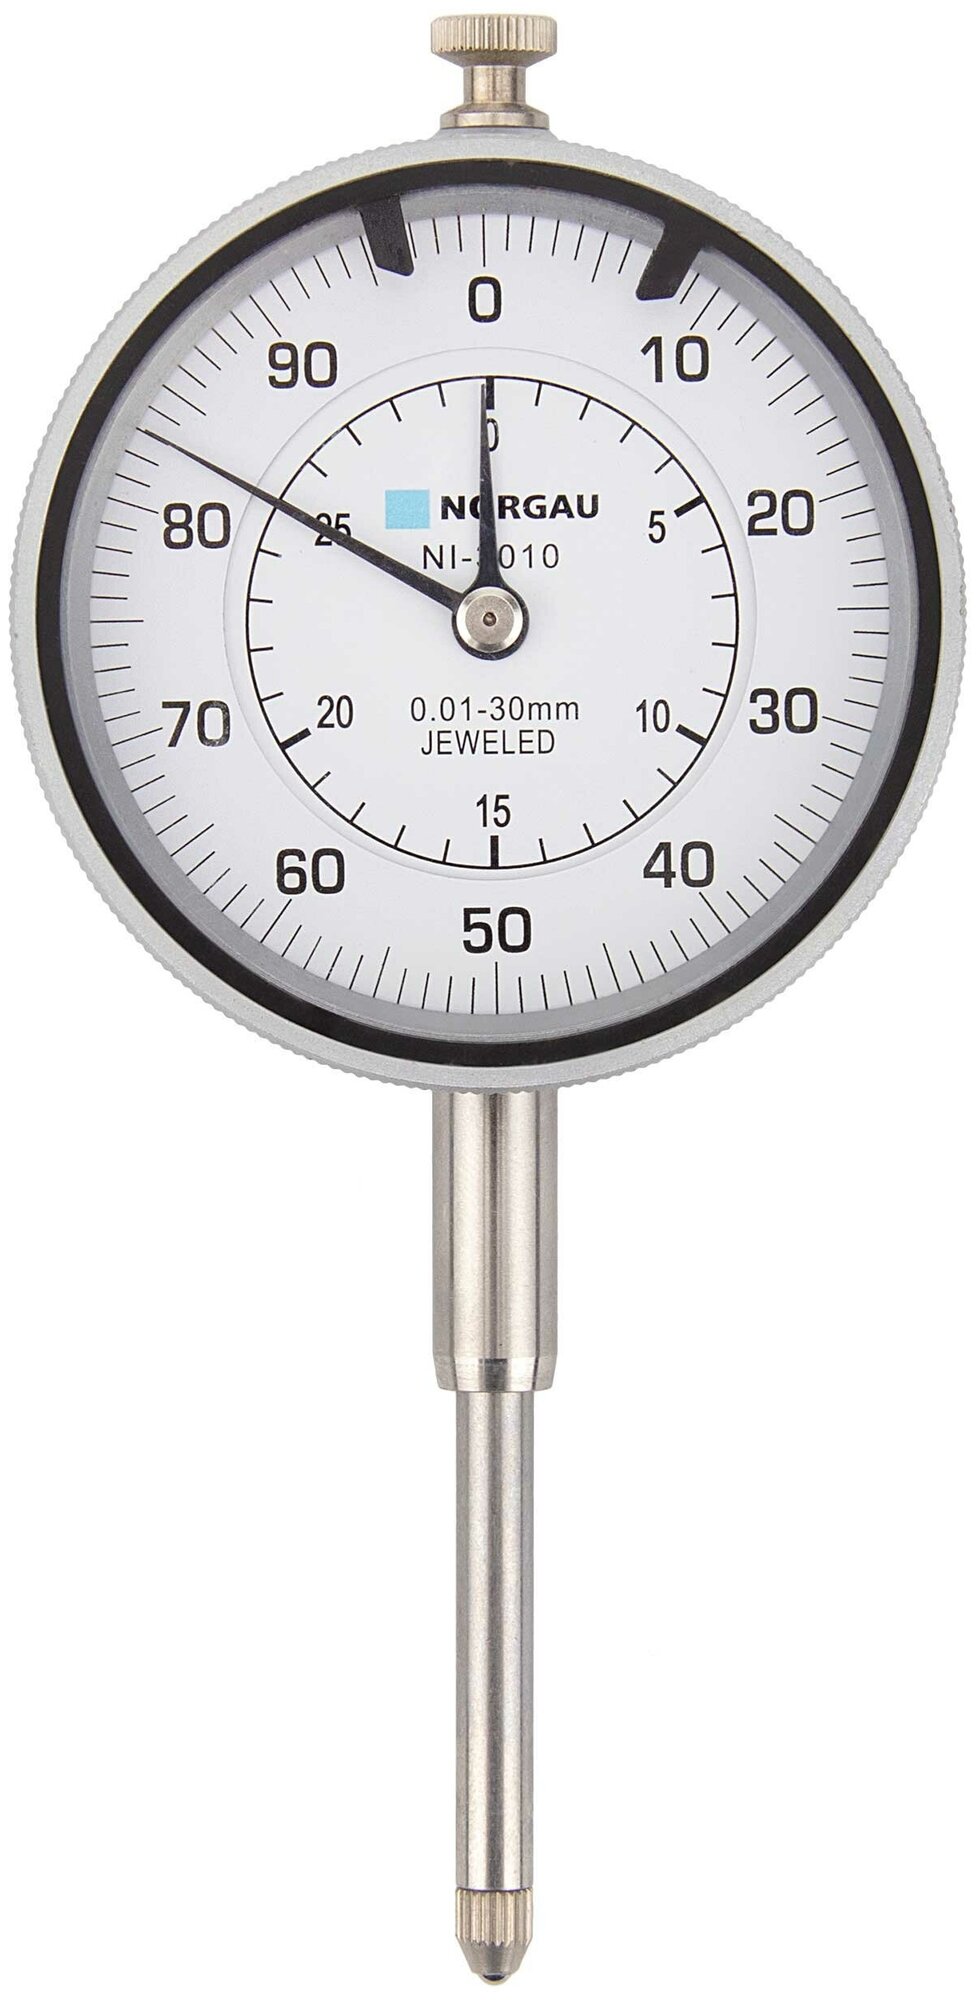 Индикатор часового типа NORGAU Industrial, в Гос. реестре, диапазон измерений 0-30 мм